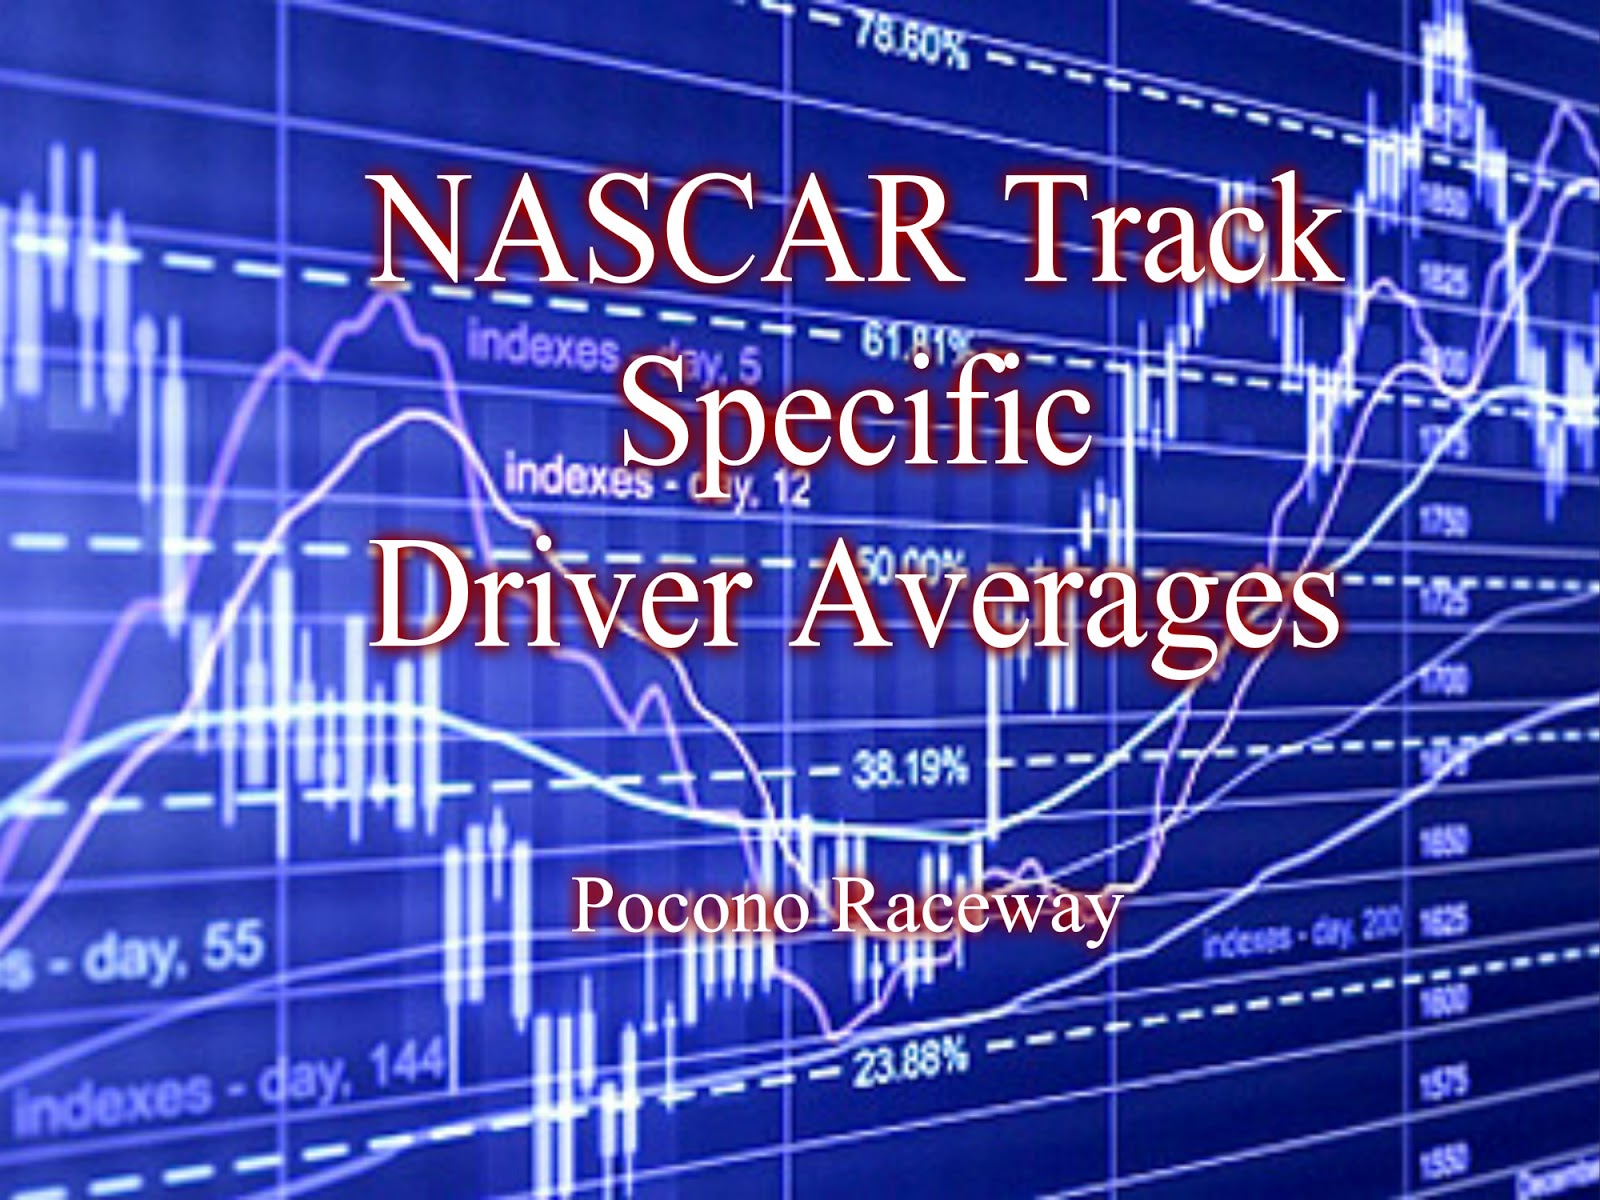 Nascar driver averages watkins glen